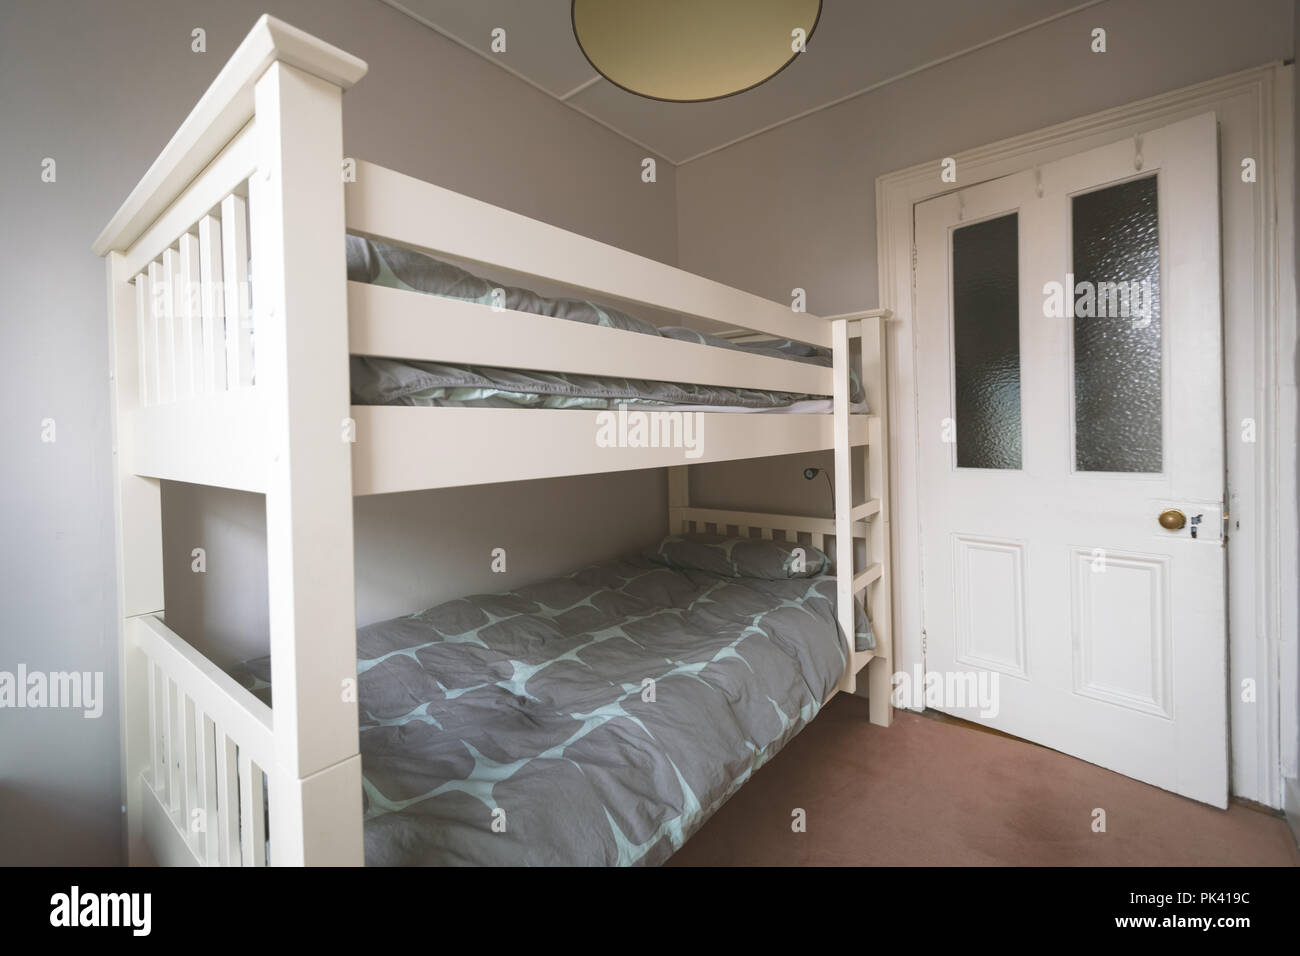 Double deck bed in empty bedroom Stock Photo